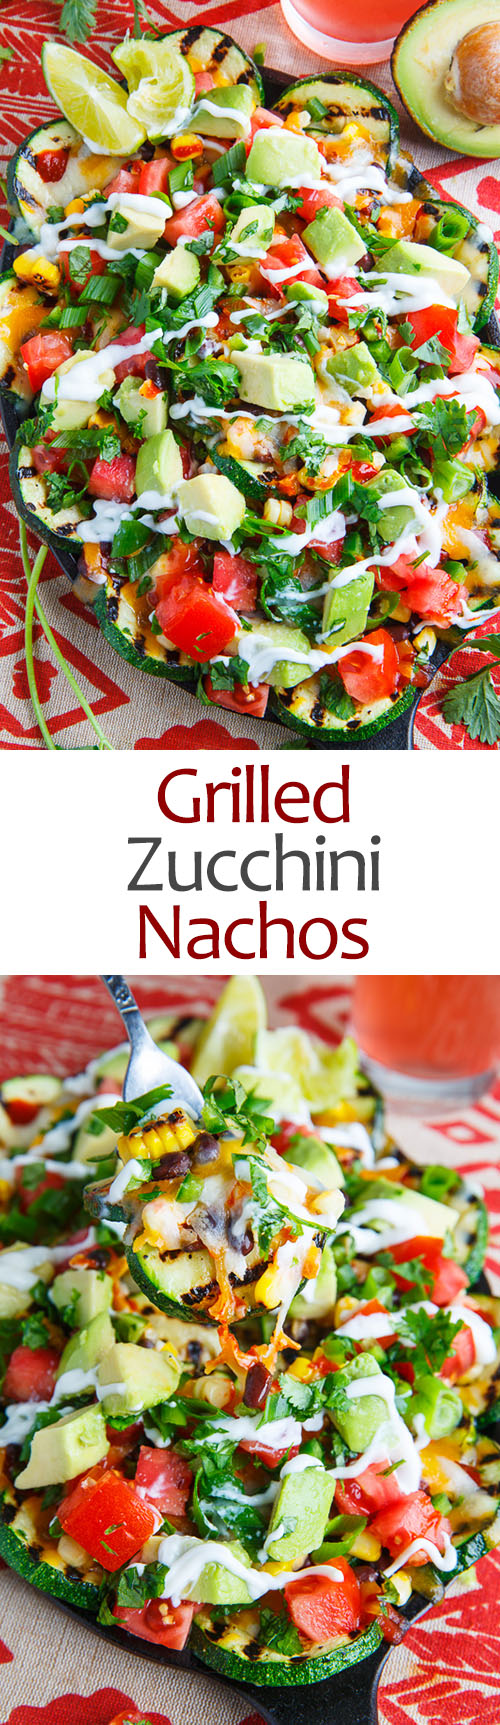 Grilled Zucchini Nachos